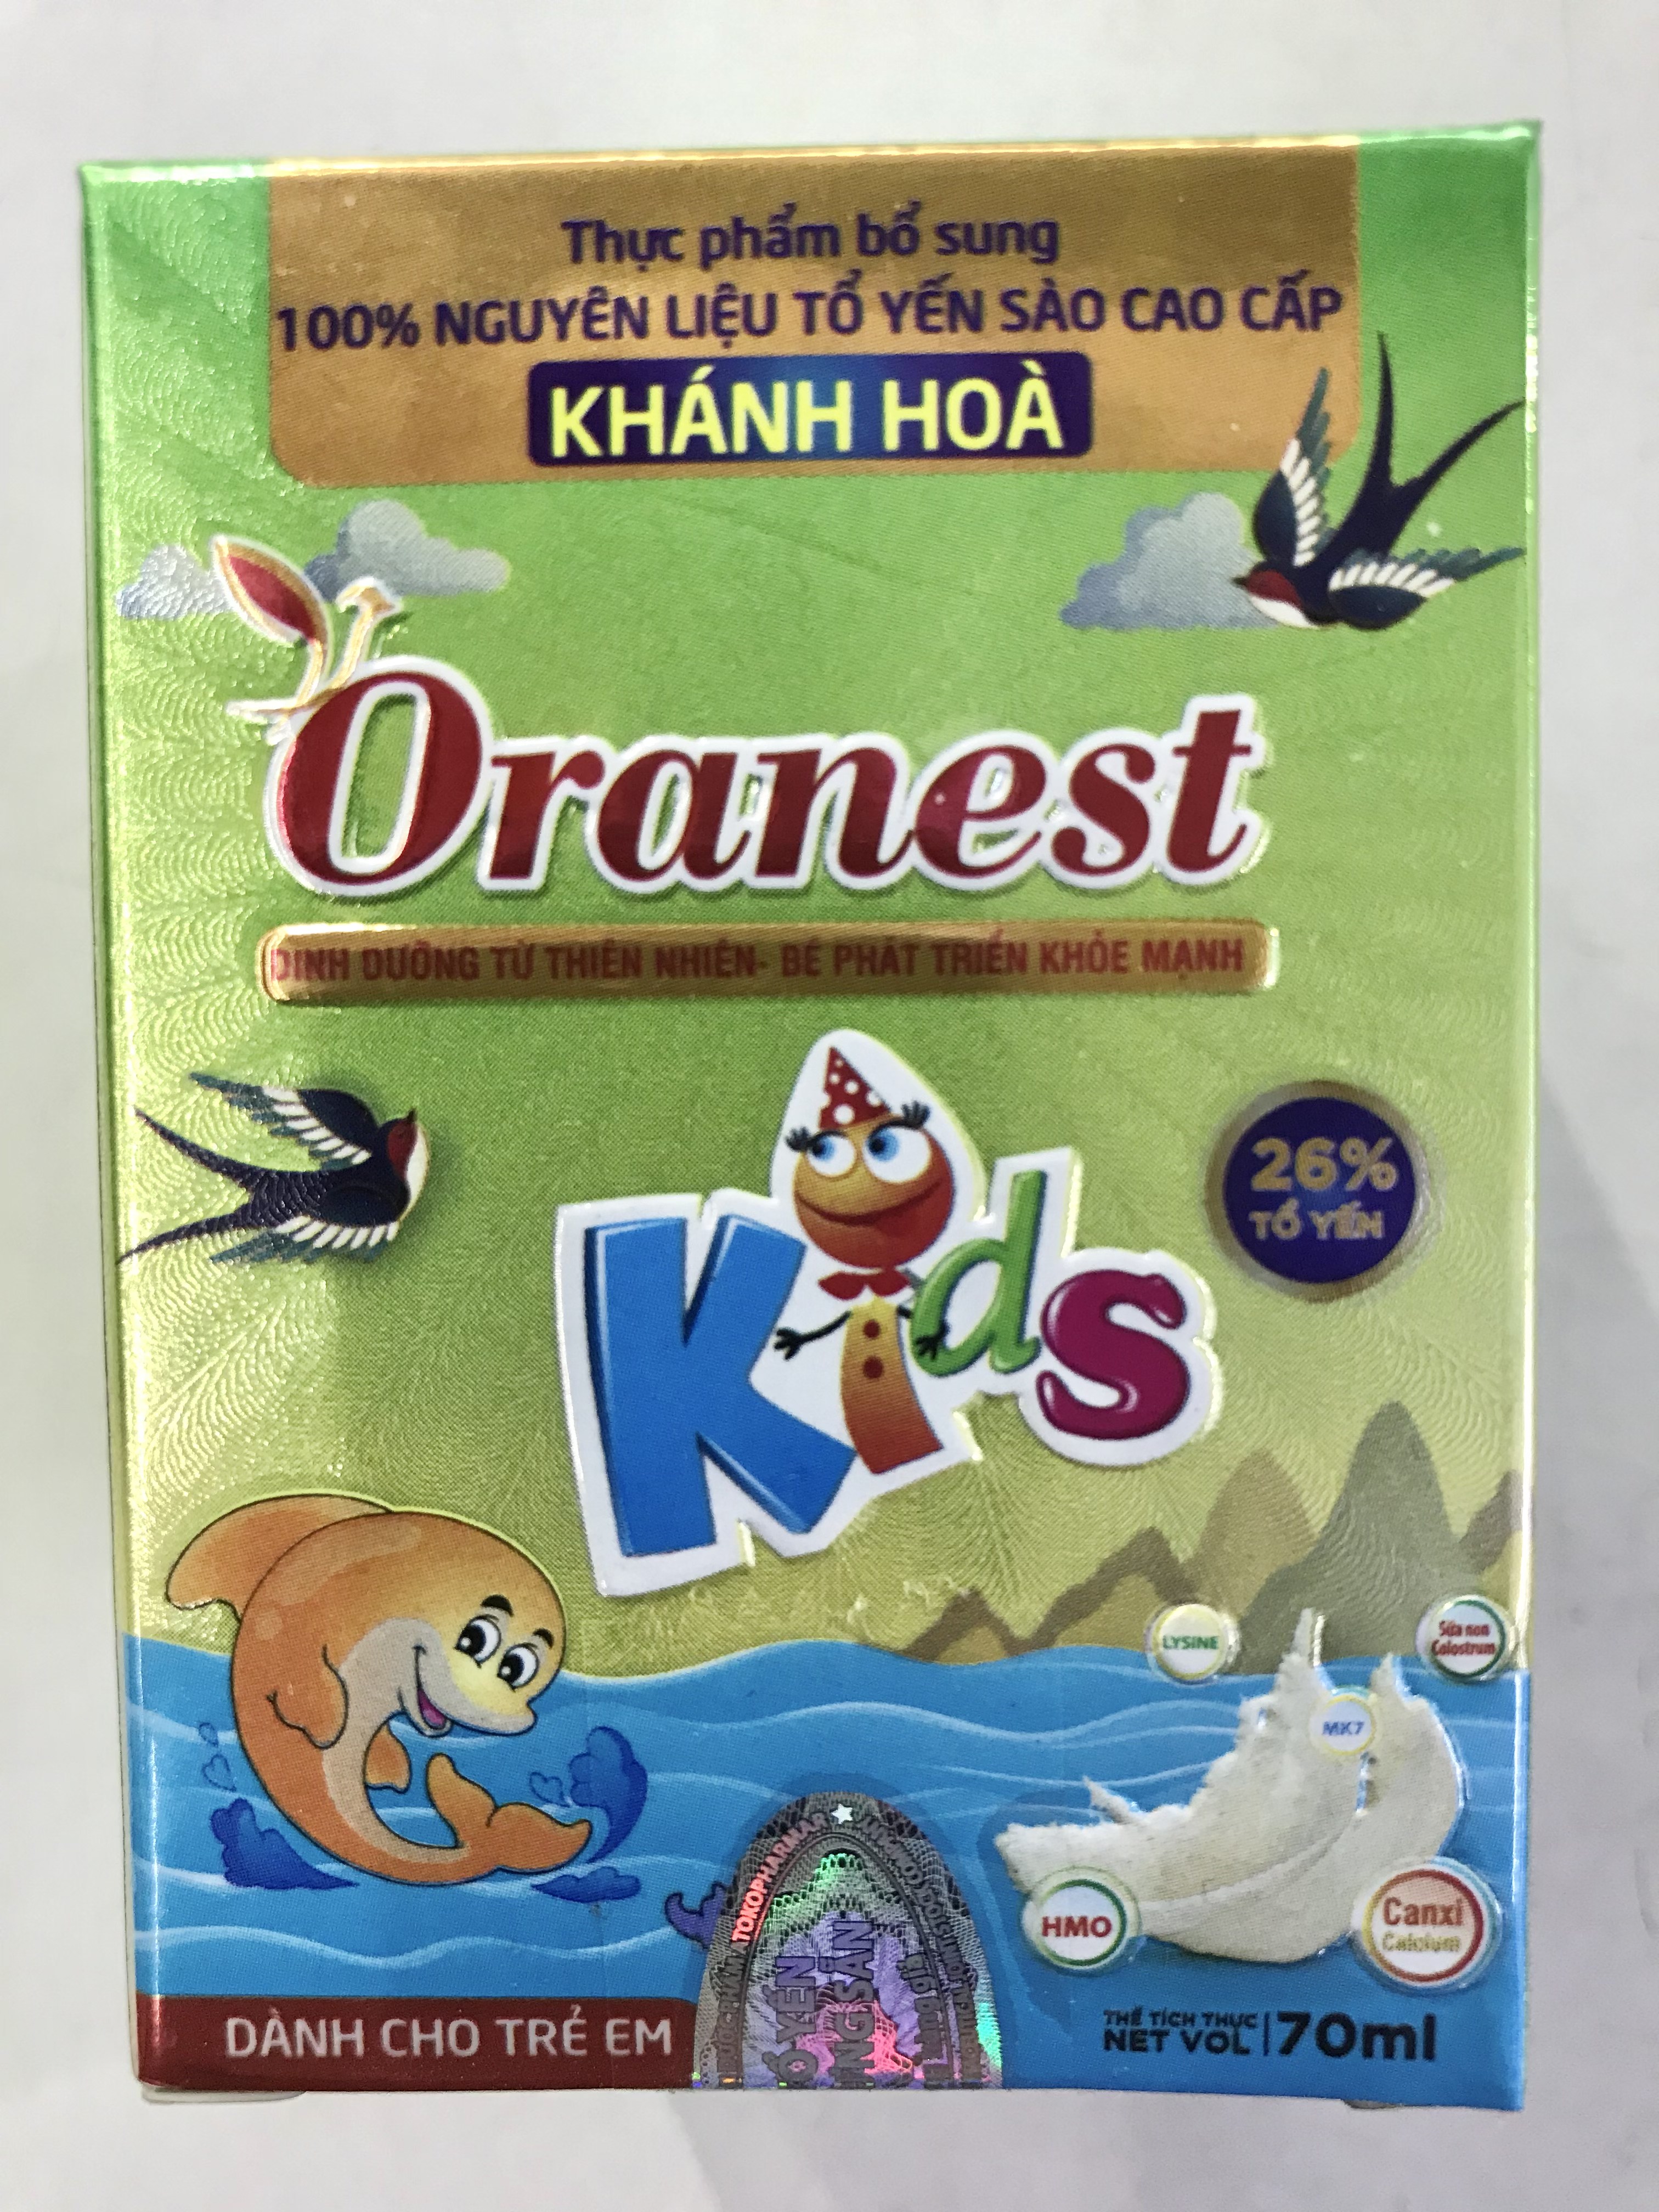 Lọ yến cho Bé Oranest Kids 70ml - Dinh dưỡng từ thiên nhiên, Bé phát triển khoẻ mạnh - 26% tổ yến & sữa non colostrum